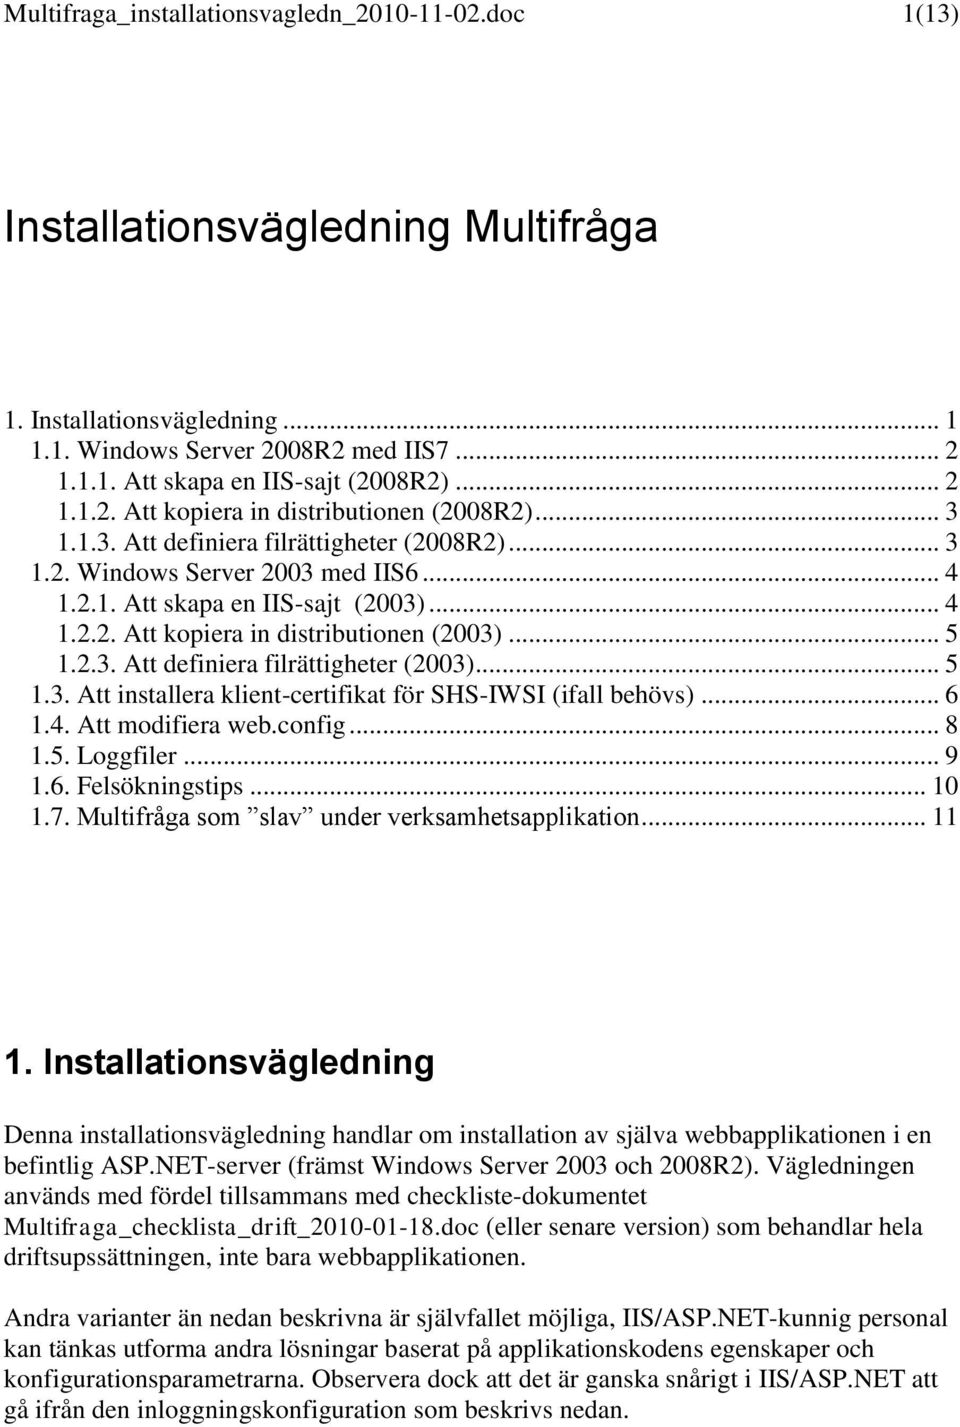 .. 5 1.2.3. Att definiera filrättigheter (2003)... 5 1.3. Att installera klient-certifikat för SHS-IWSI (ifall behövs)... 6 1.4. Att modifiera web.config... 8 1.5. Loggfiler... 9 1.6. Felsökningstips.